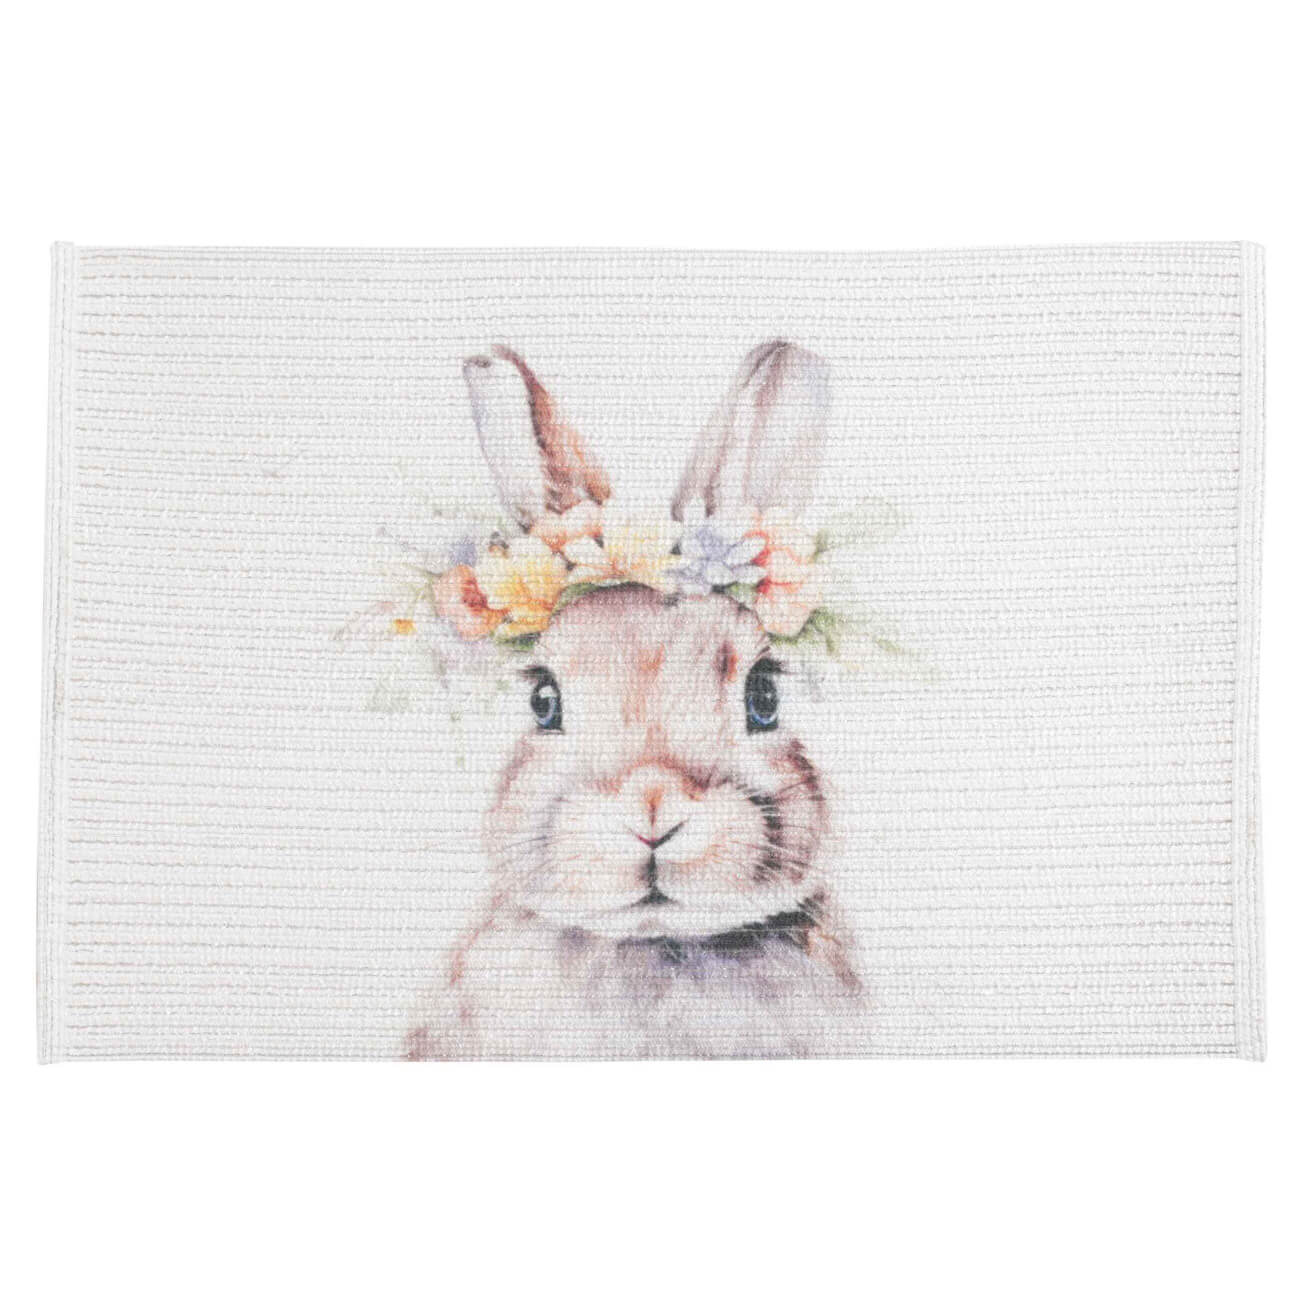 Салфетка под приборы, 30х45 см, полиэстер, прямоугольная, белая, Кролик в венке, Rotary print - фото 1